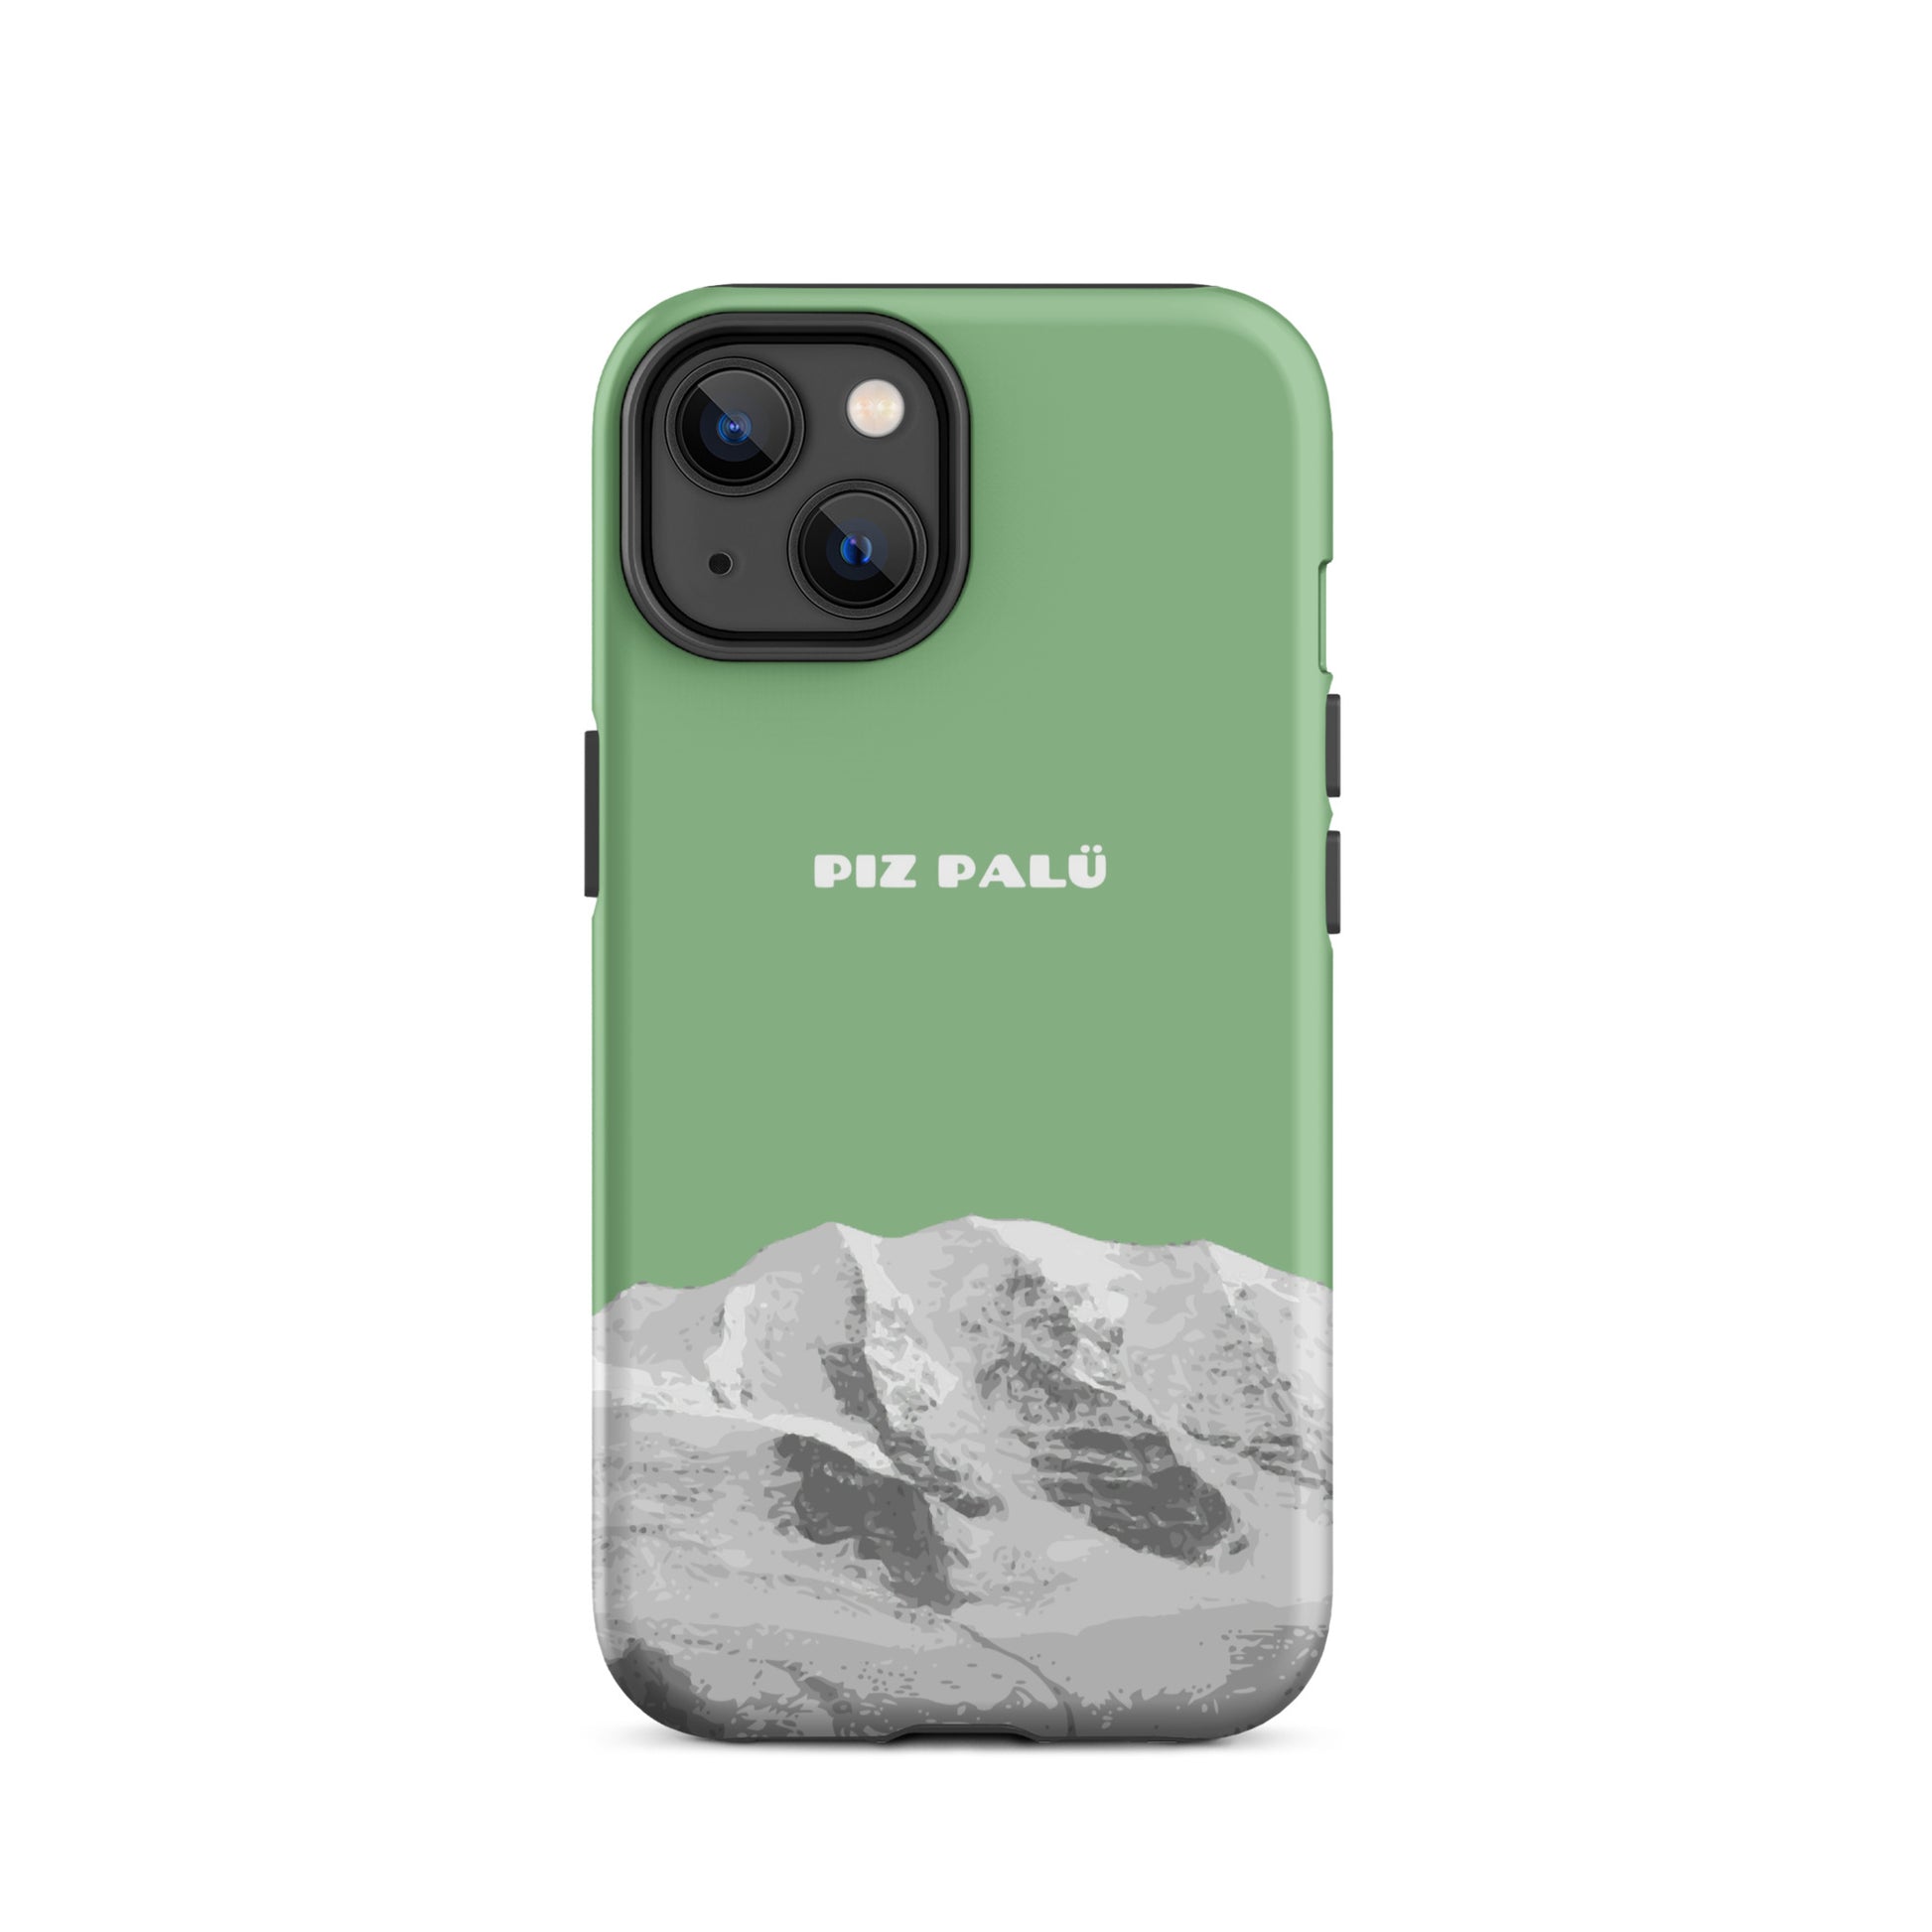 Hülle für das iPhone 14 von Apple in der Farbe Hellgrün, dass den Piz Palü in Graubünden zeigt.